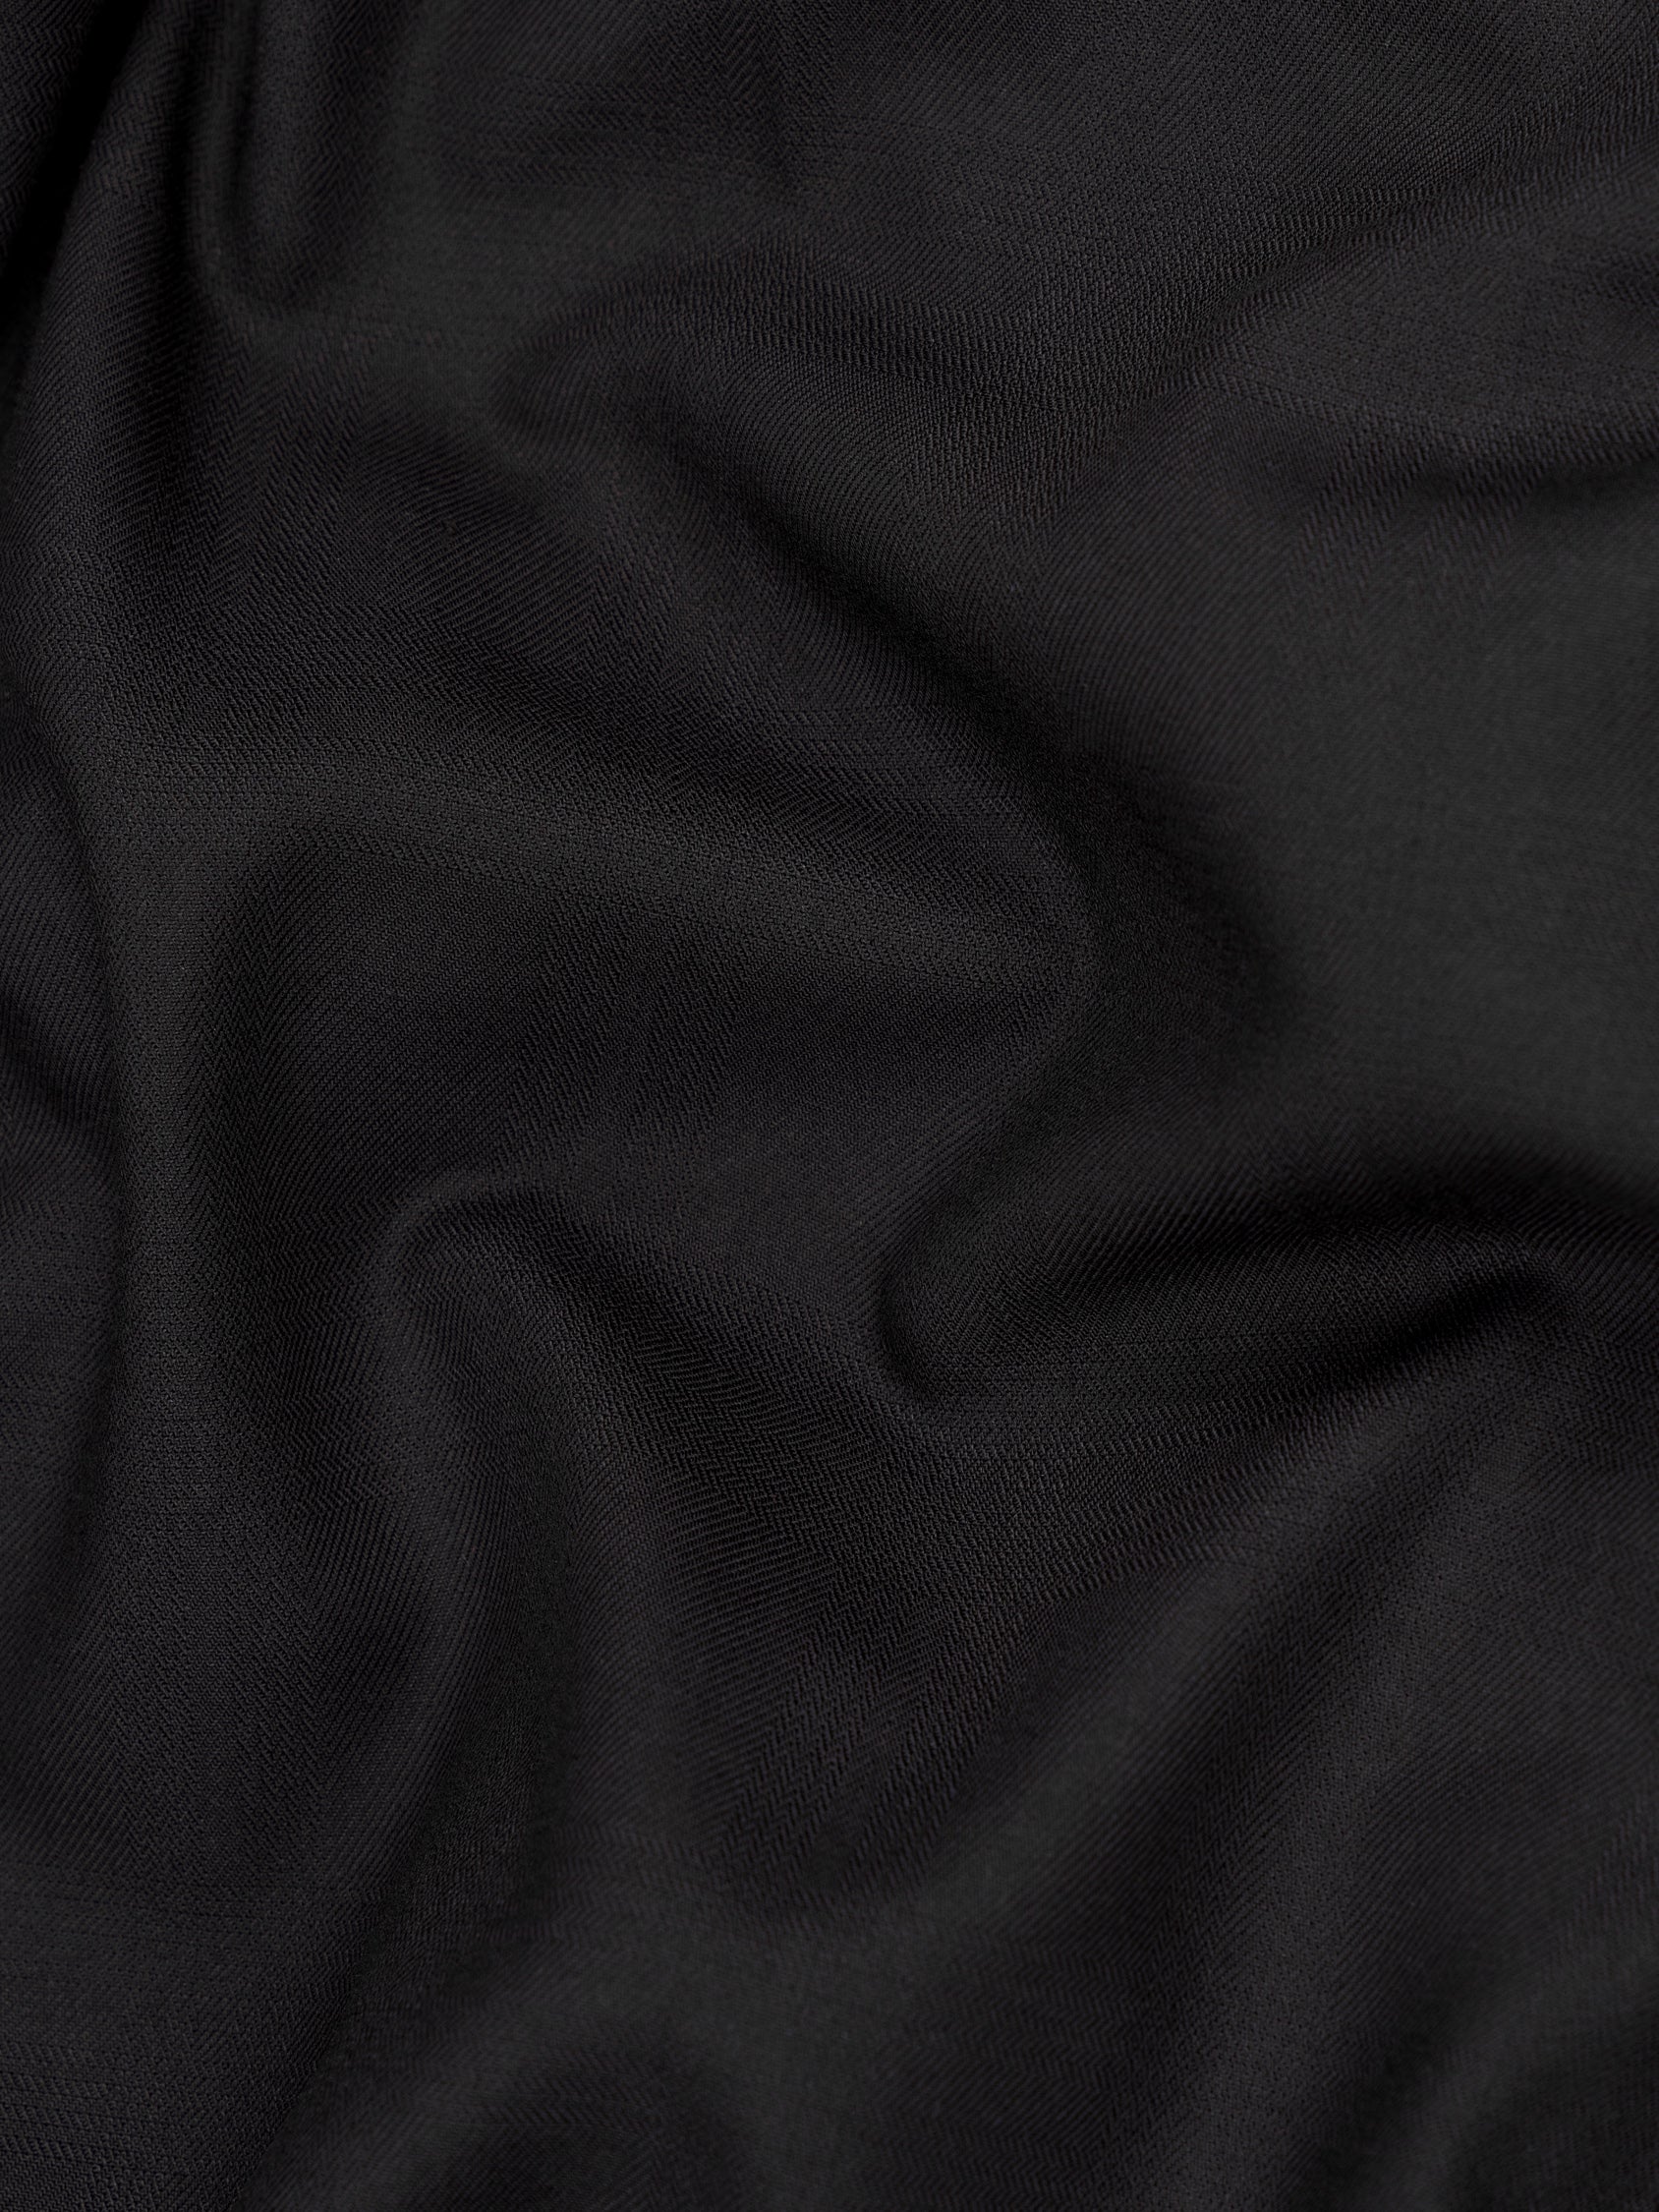 Black Russian Subtle Textured Wool rich Tuxedo Blazer